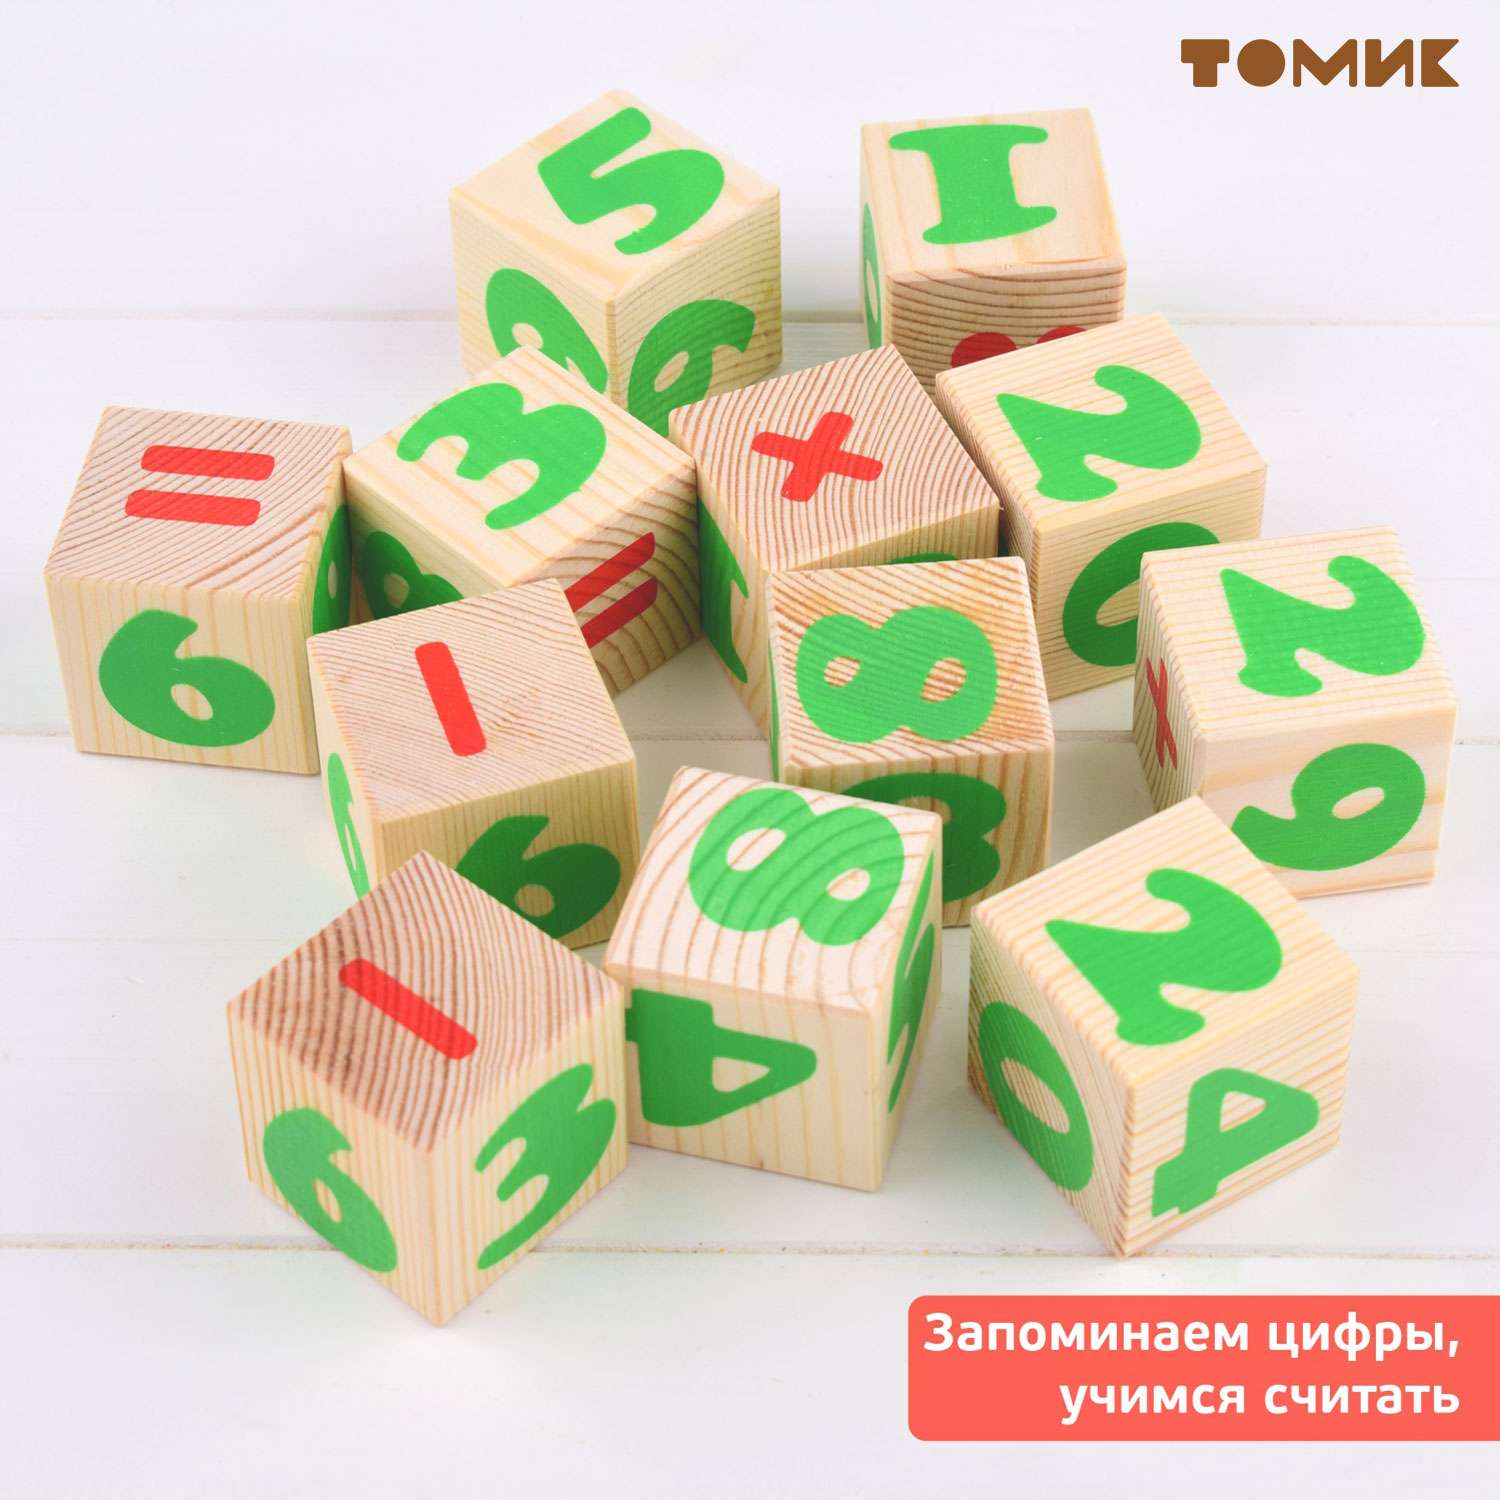 Кубики для детей Томик цифры 12 шт. 1111-3 - фото 6